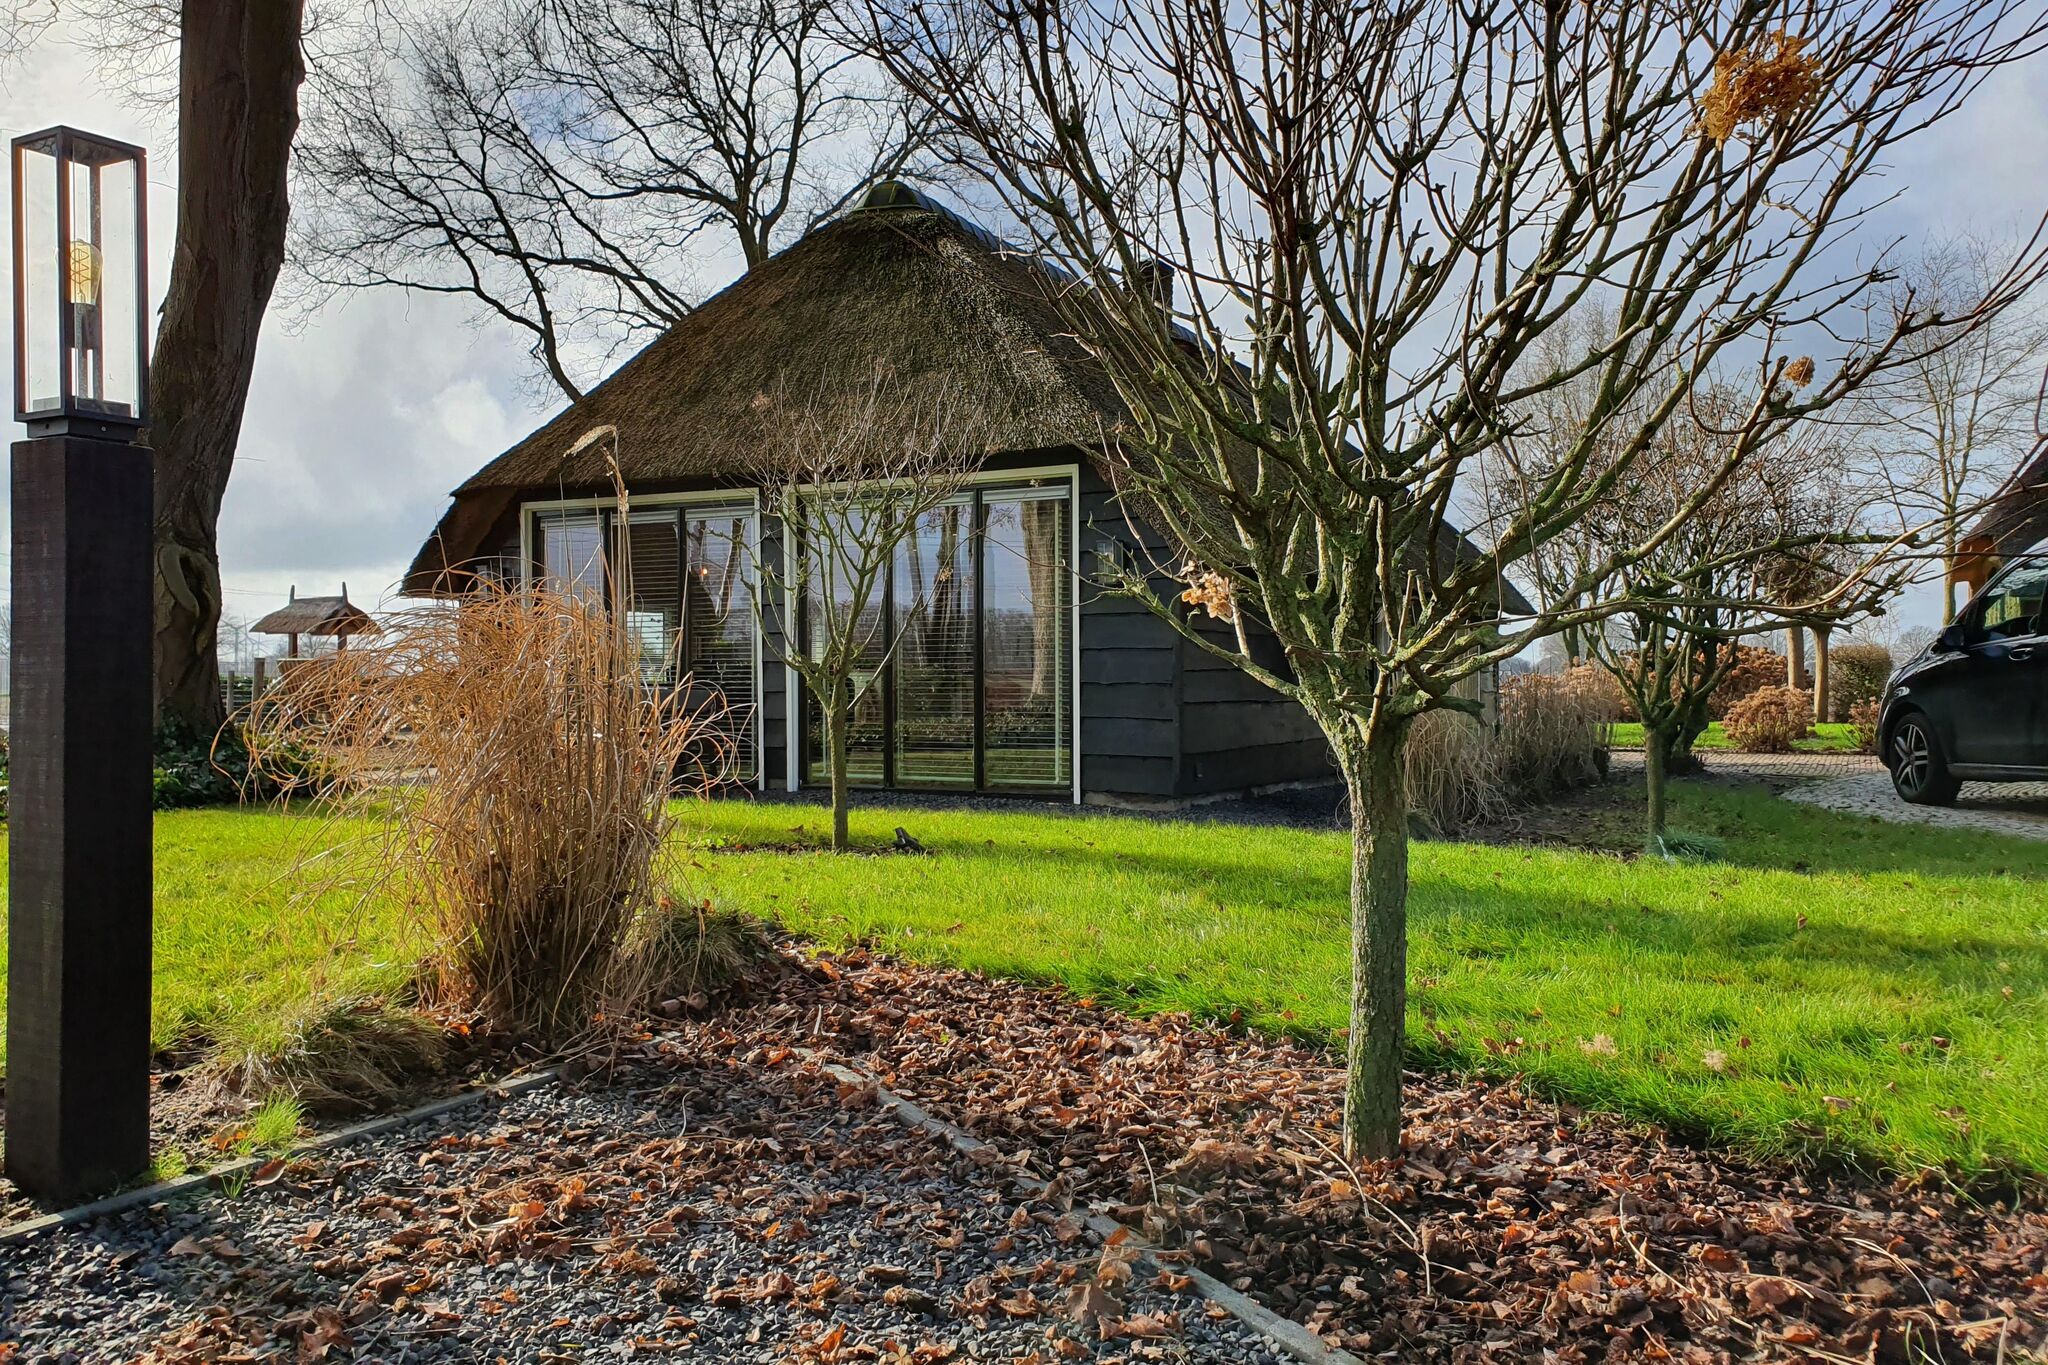 Holiday home Heeresteeg in Nieuwleusen with garden